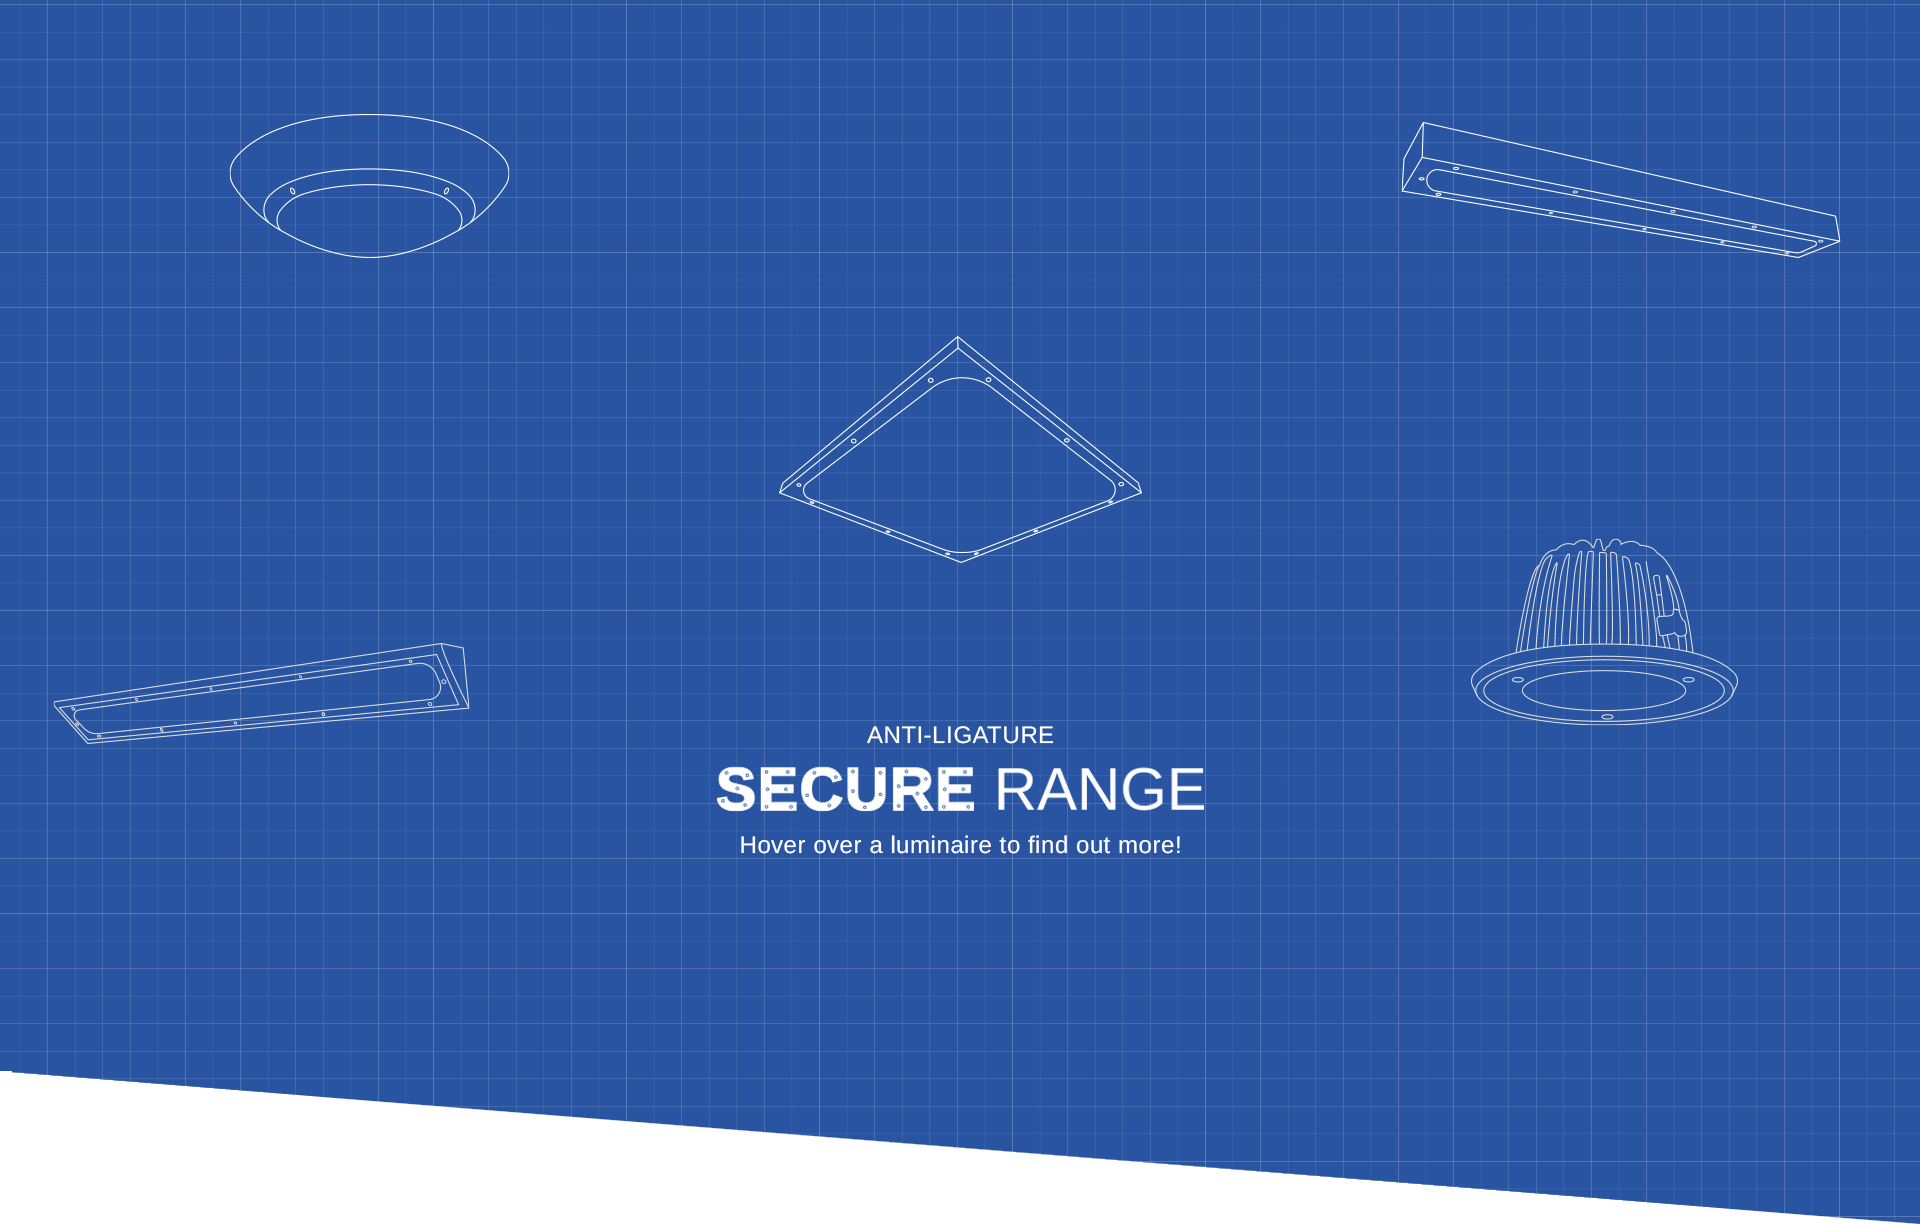 Tamlite anti-ligature secure range landing page banner